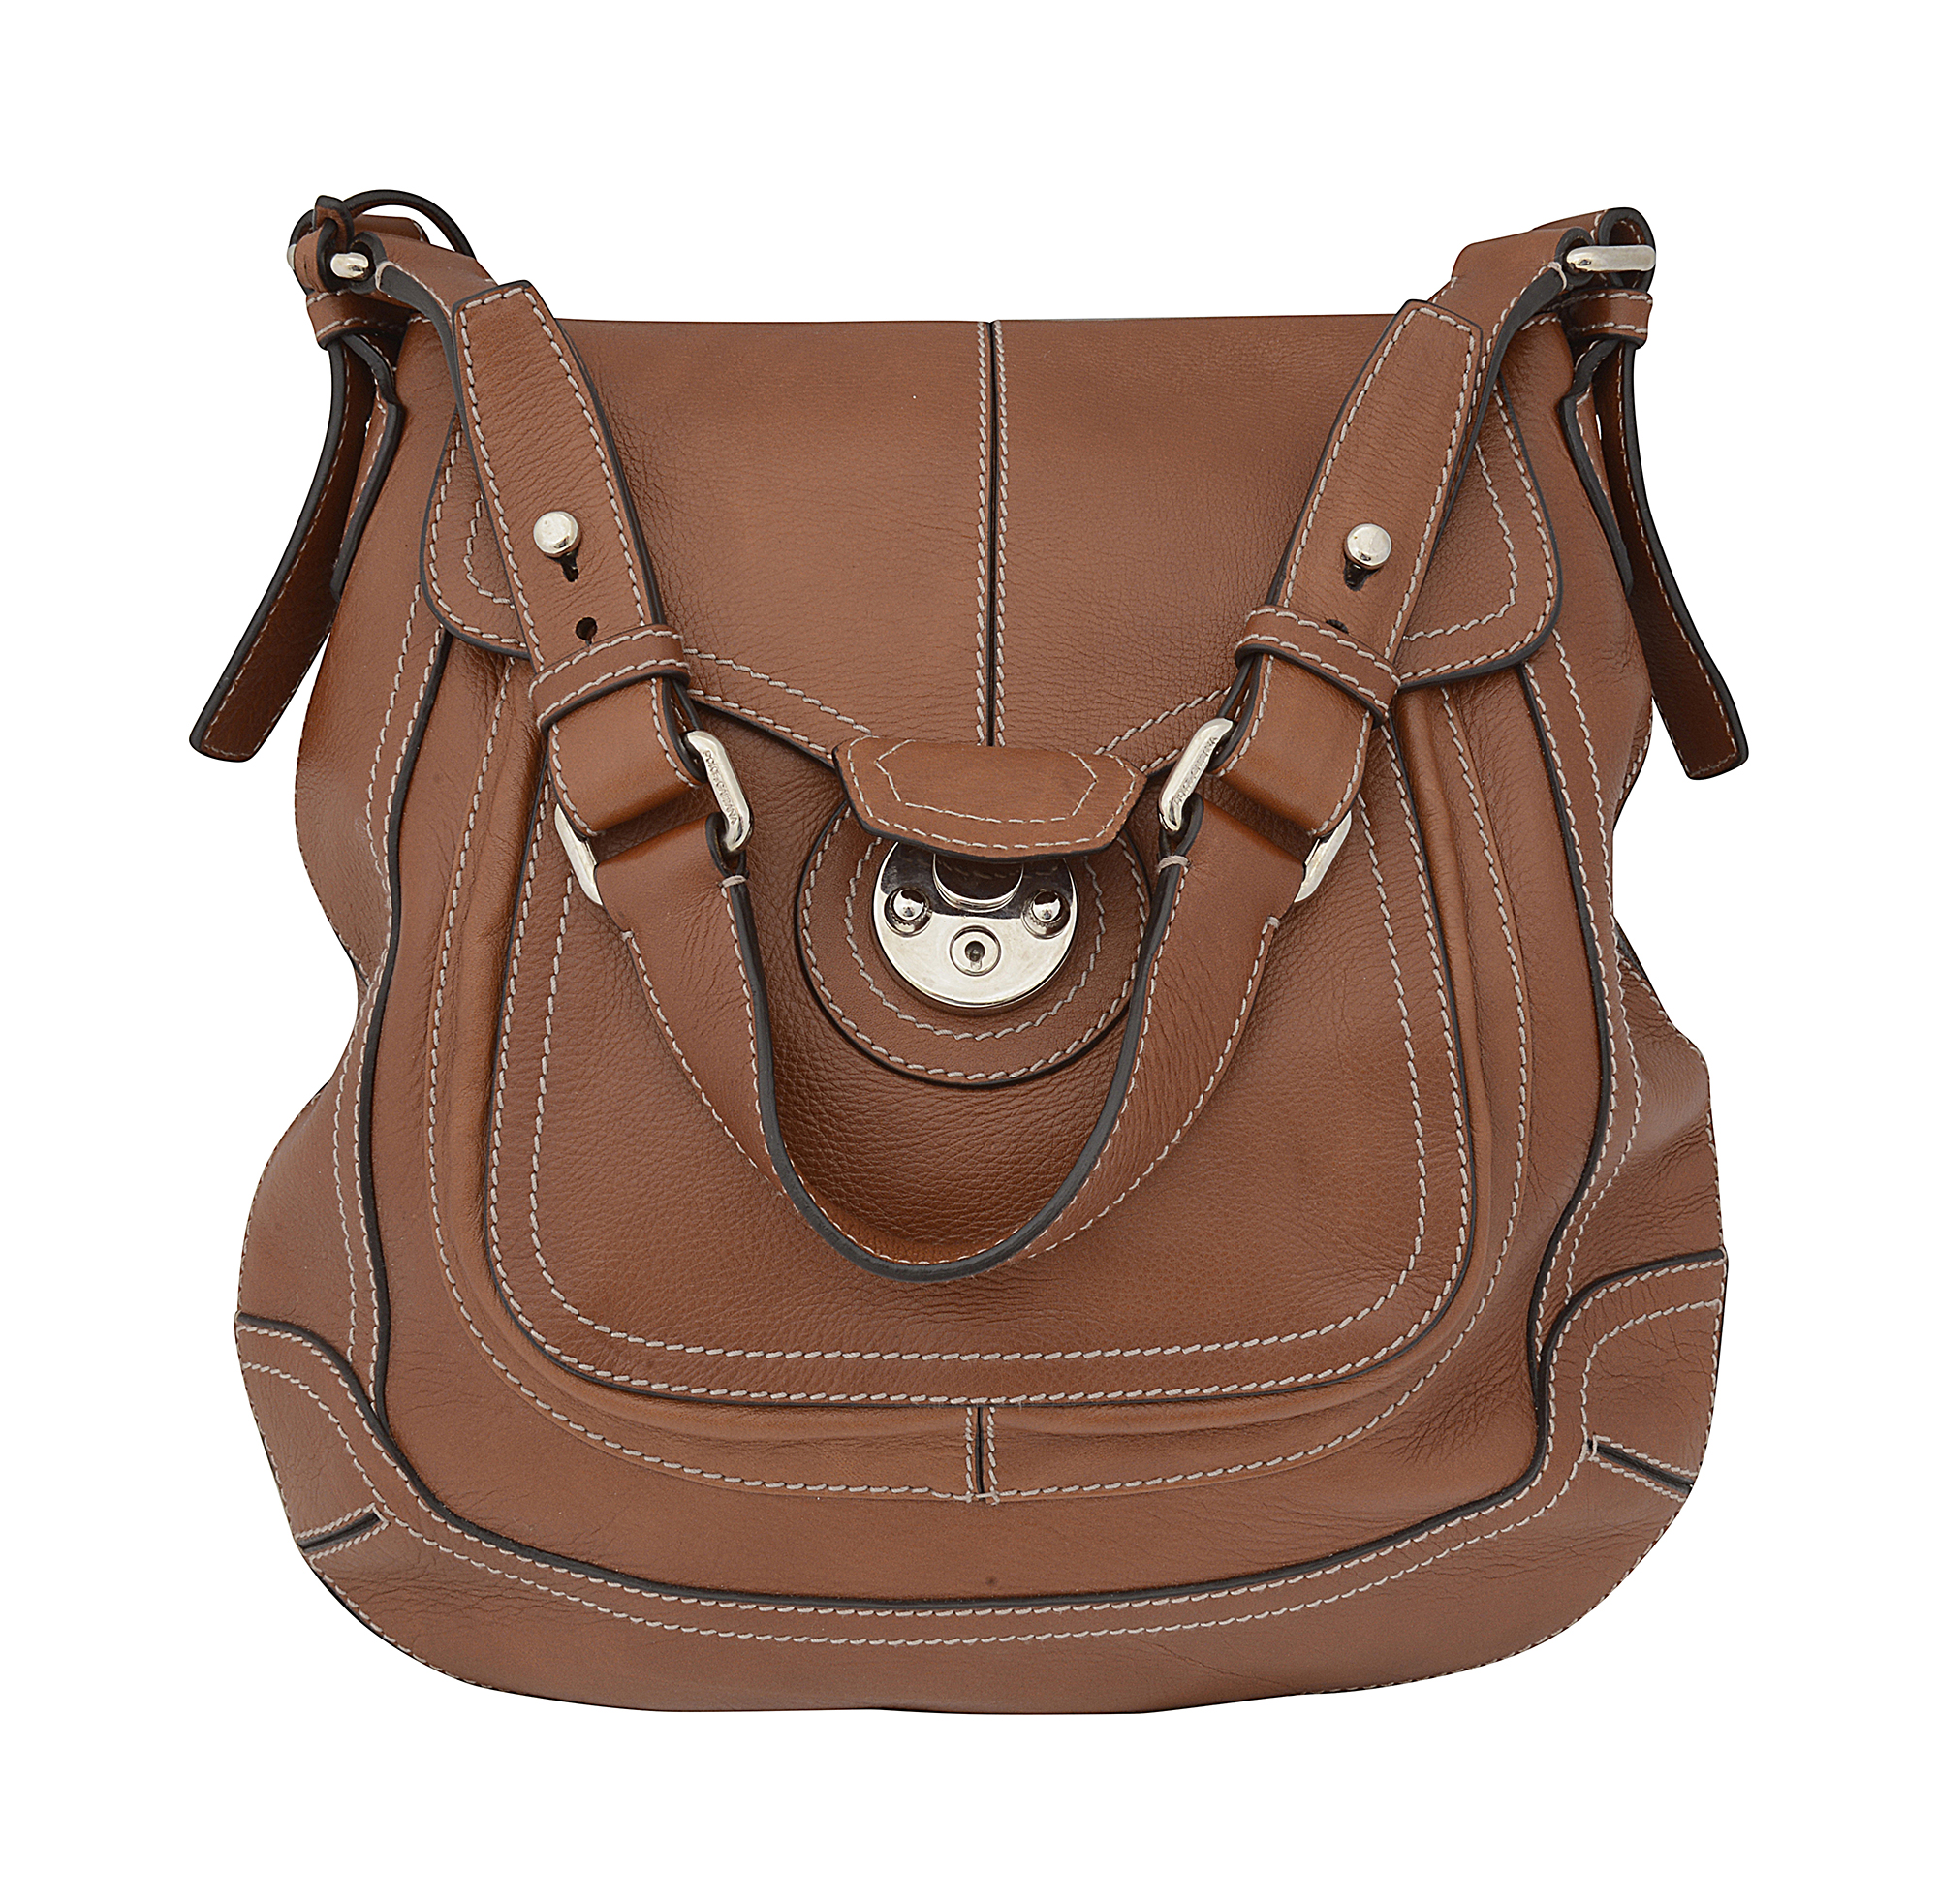 A Dolce & Gabbana tan shoulder bag - Image 3 of 3